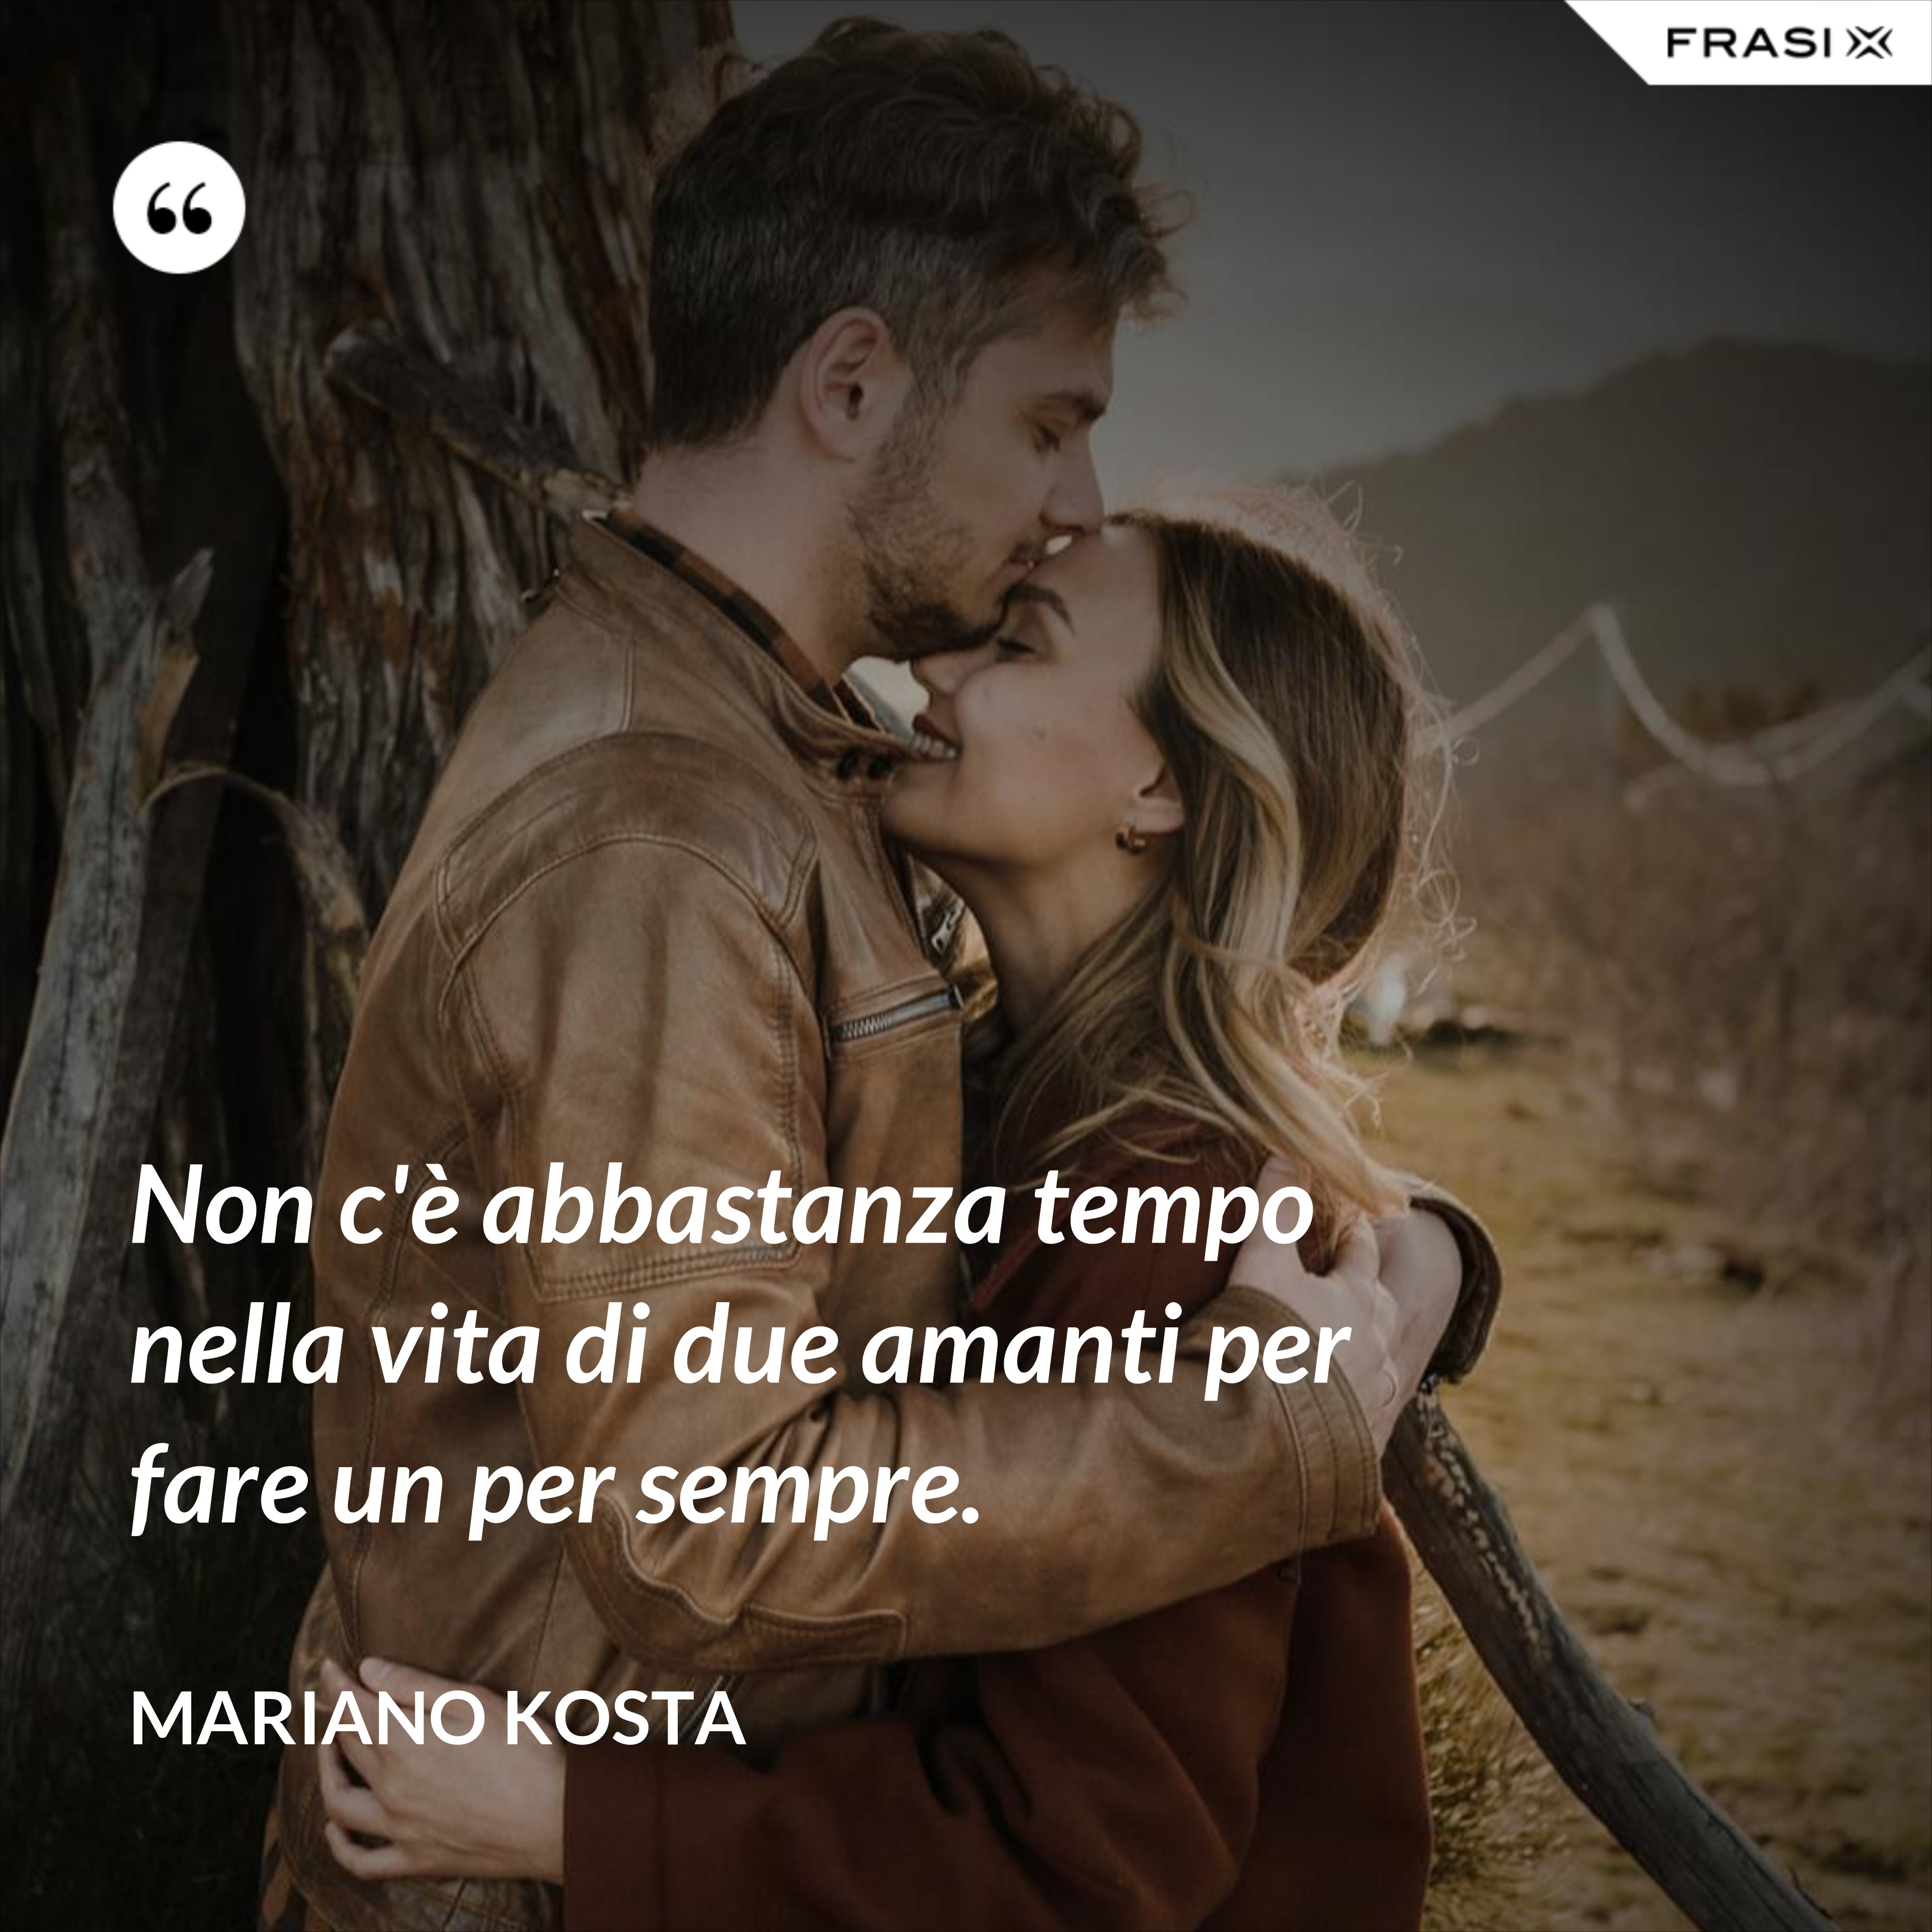 Non c'è abbastanza tempo nella vita di due amanti per fare un per sempre. - Mariano Kosta